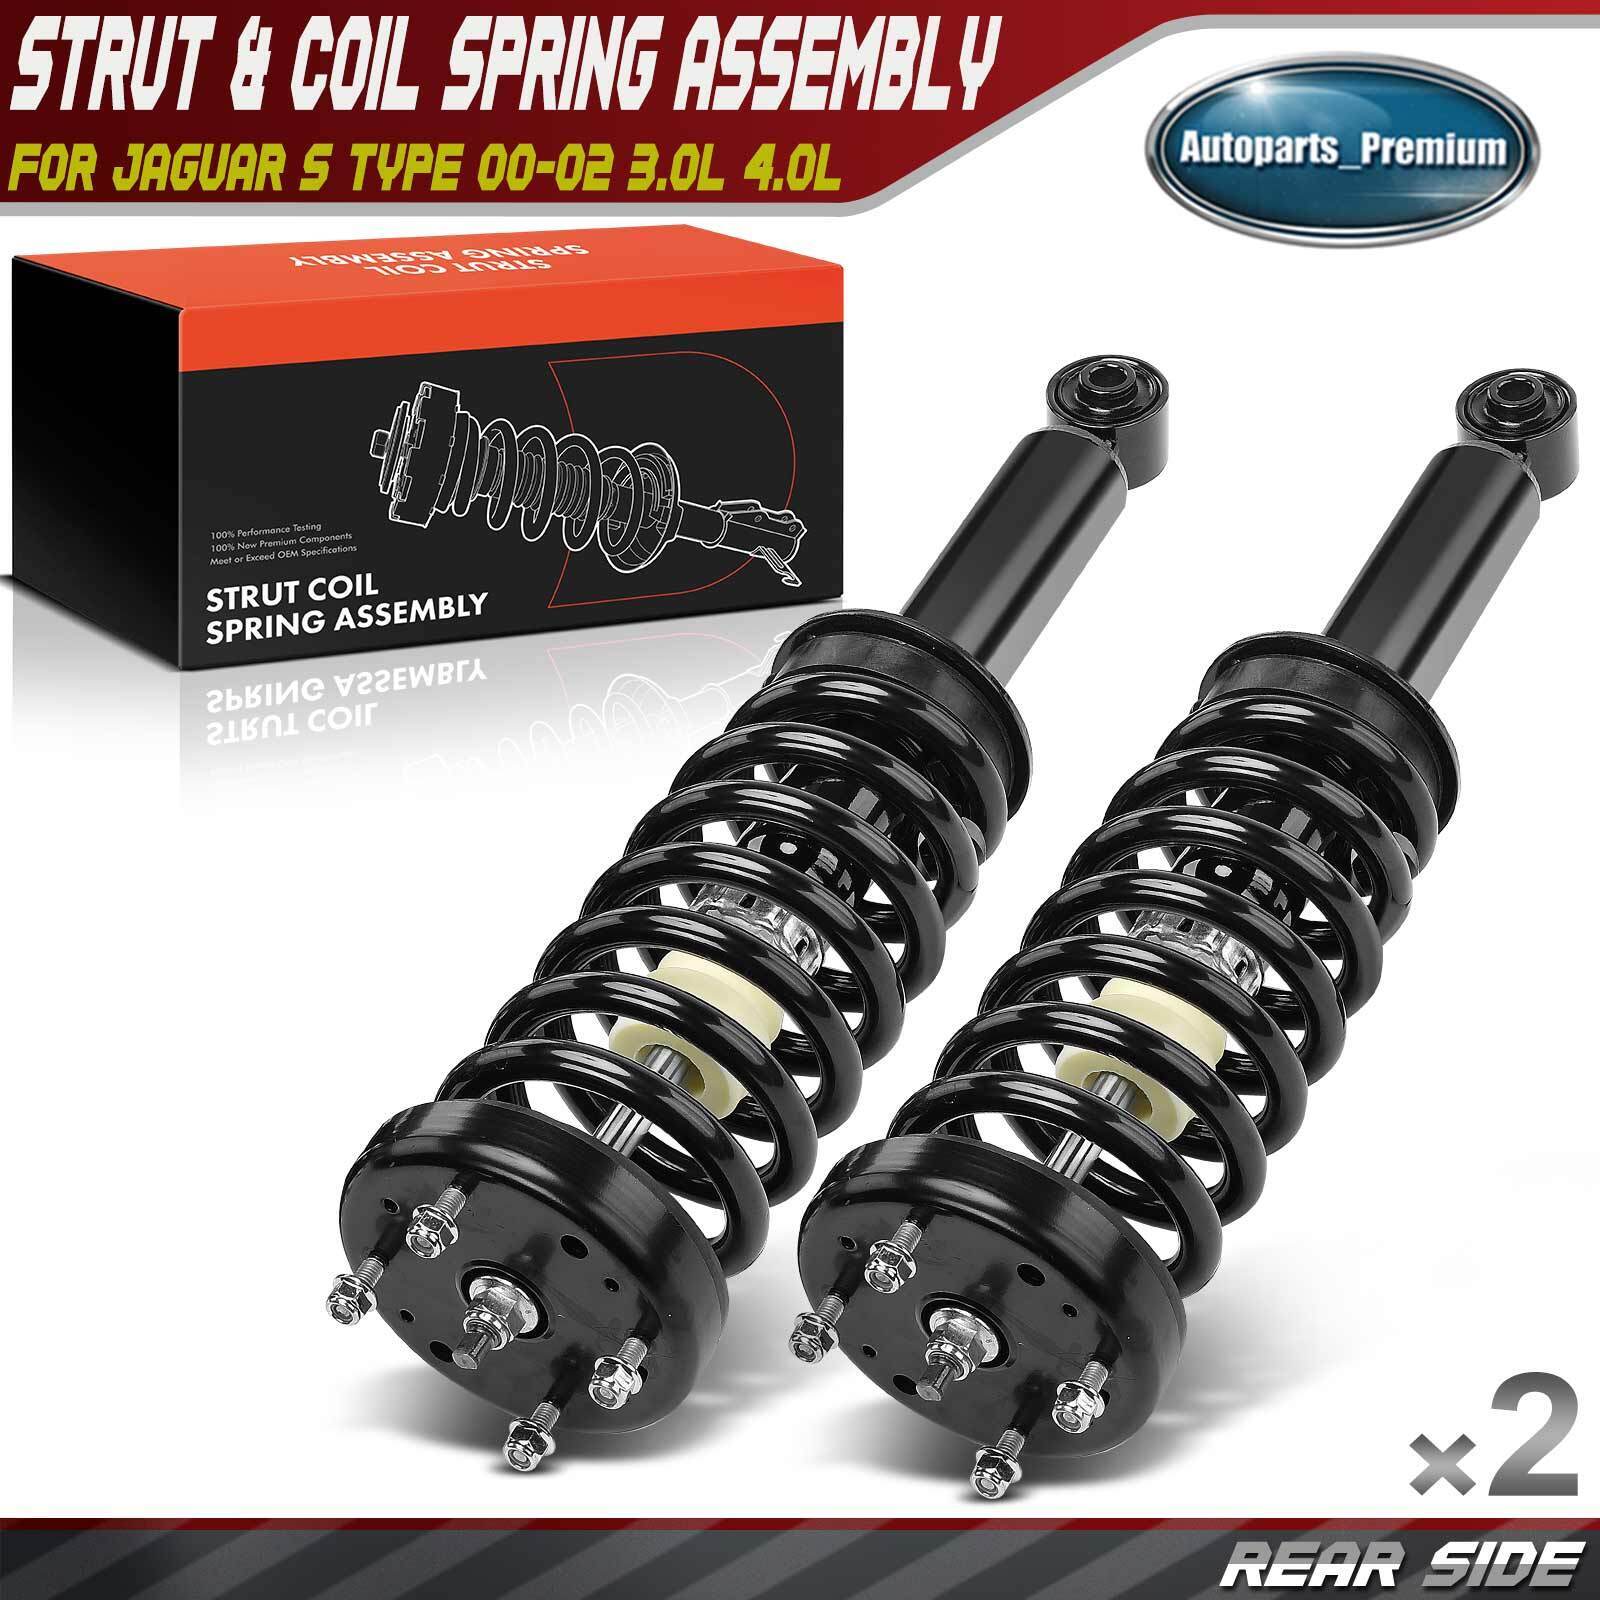 2x Rear Complete Strut & Coil Spring Assembly for Jaguar S Type 00-02 3.0L 4.0L